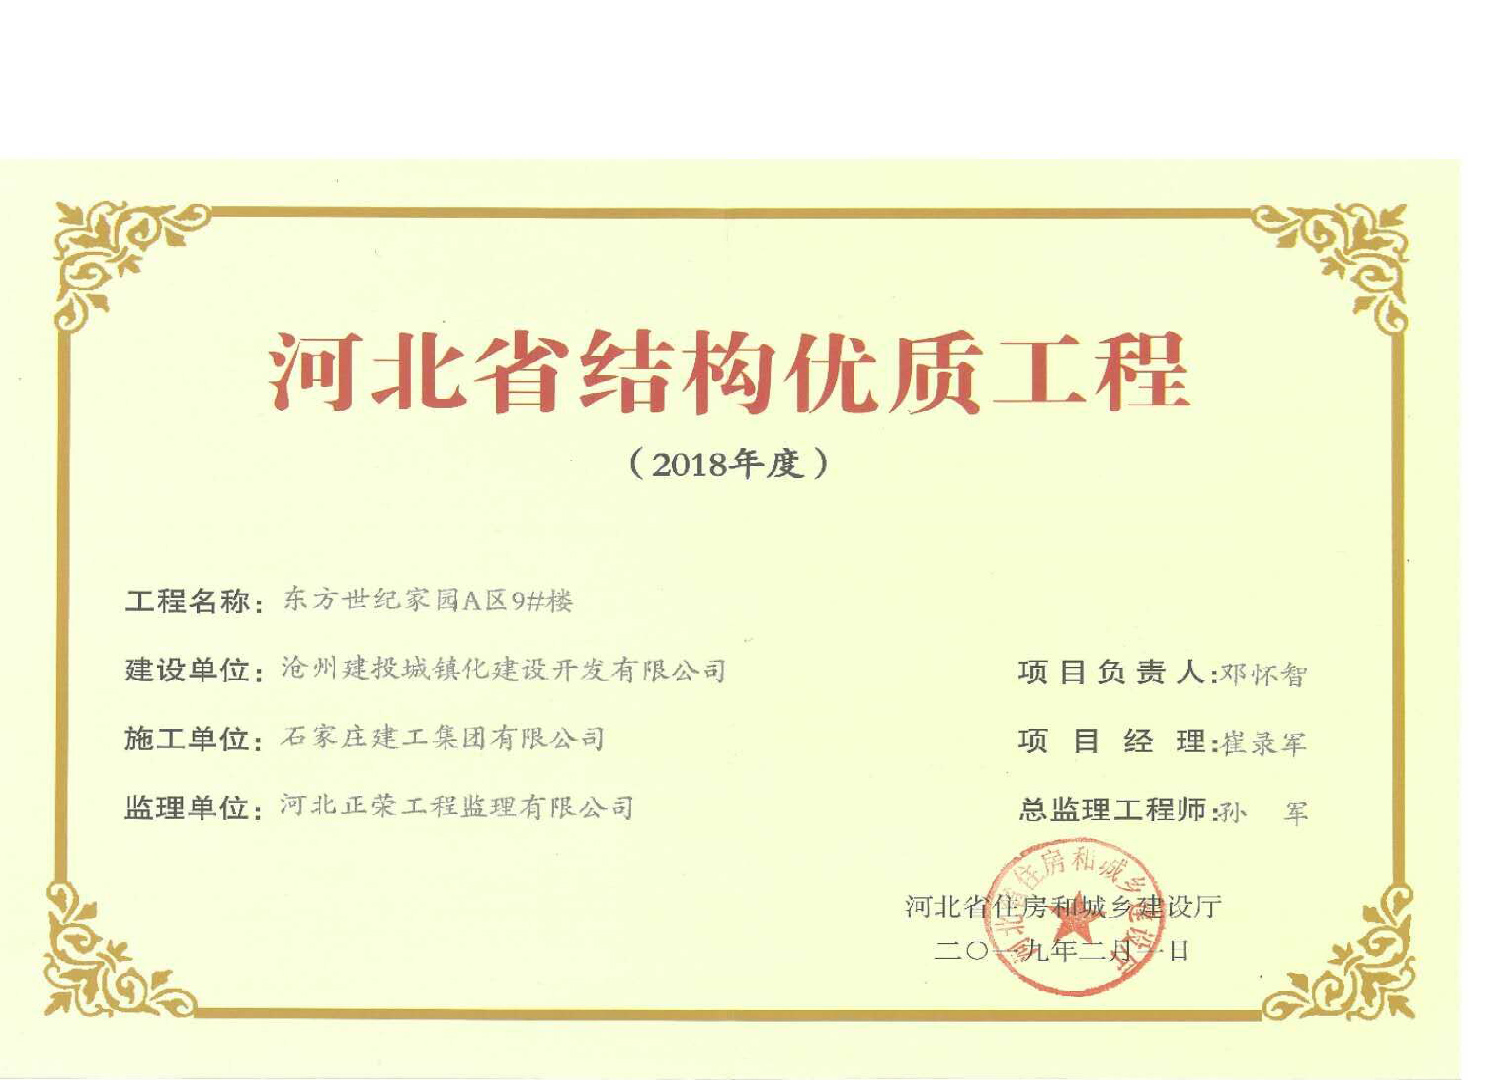 集团公司沧州东方世纪家园工程喜获2018年度河北省结构优质工程奖